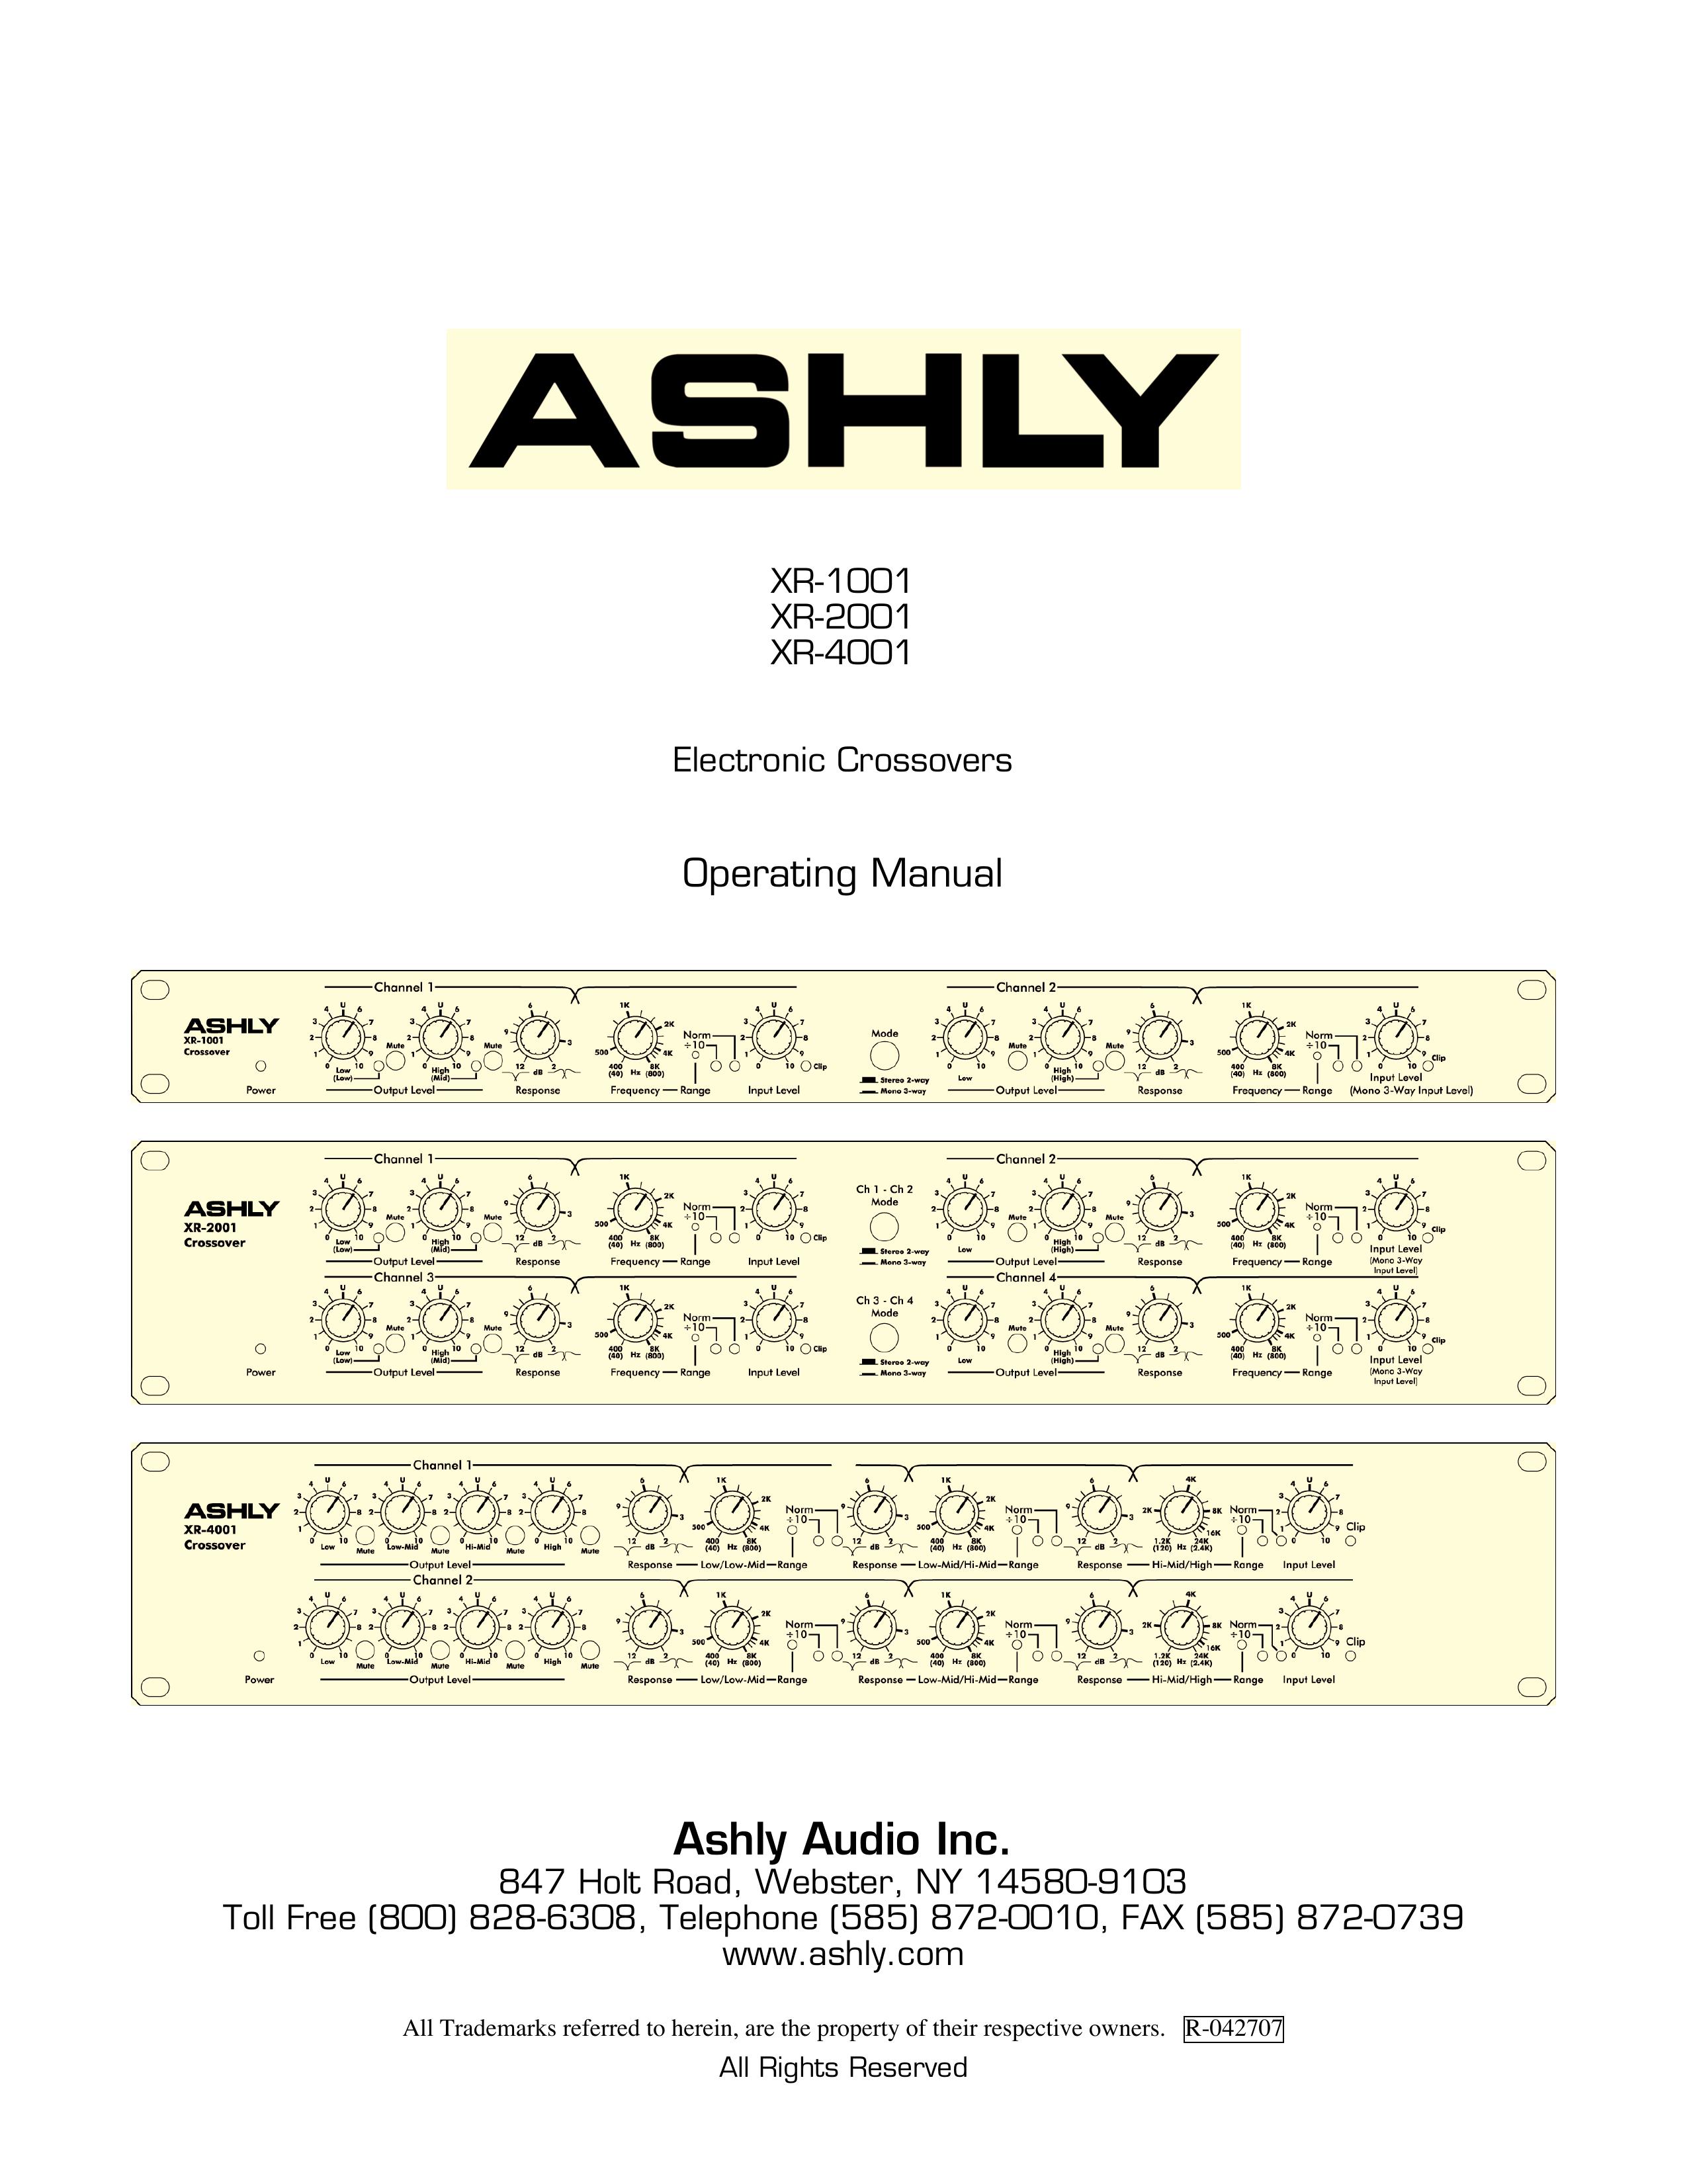 Ashly XR-4001 Refrigerator User Manual